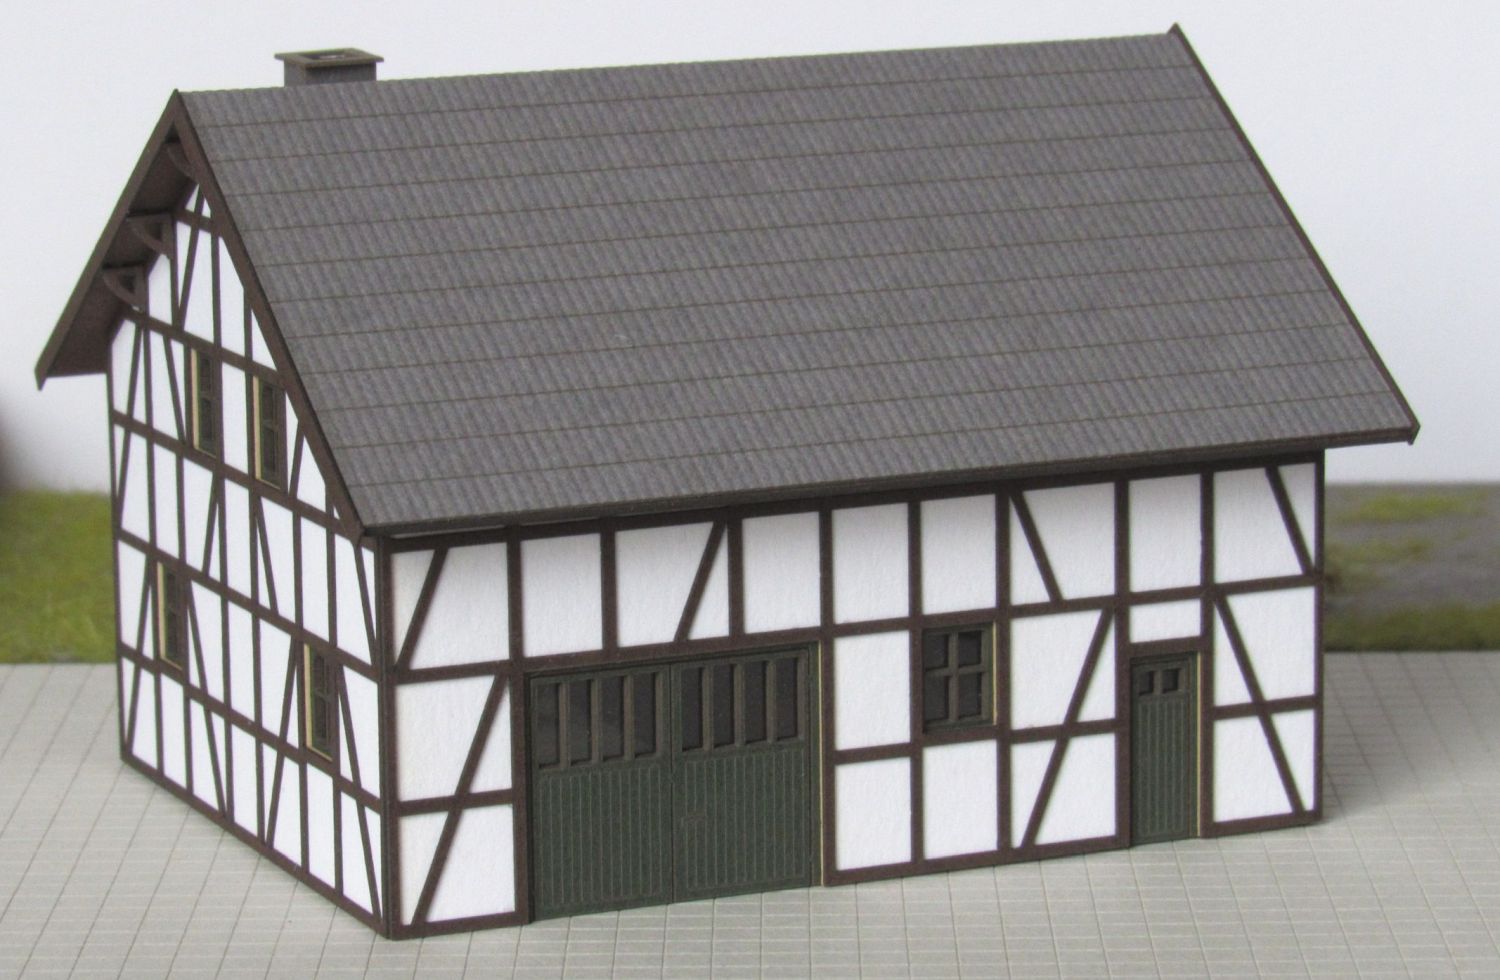 Laffont T501 - Fachwerk-Bauernhaus, verputzt